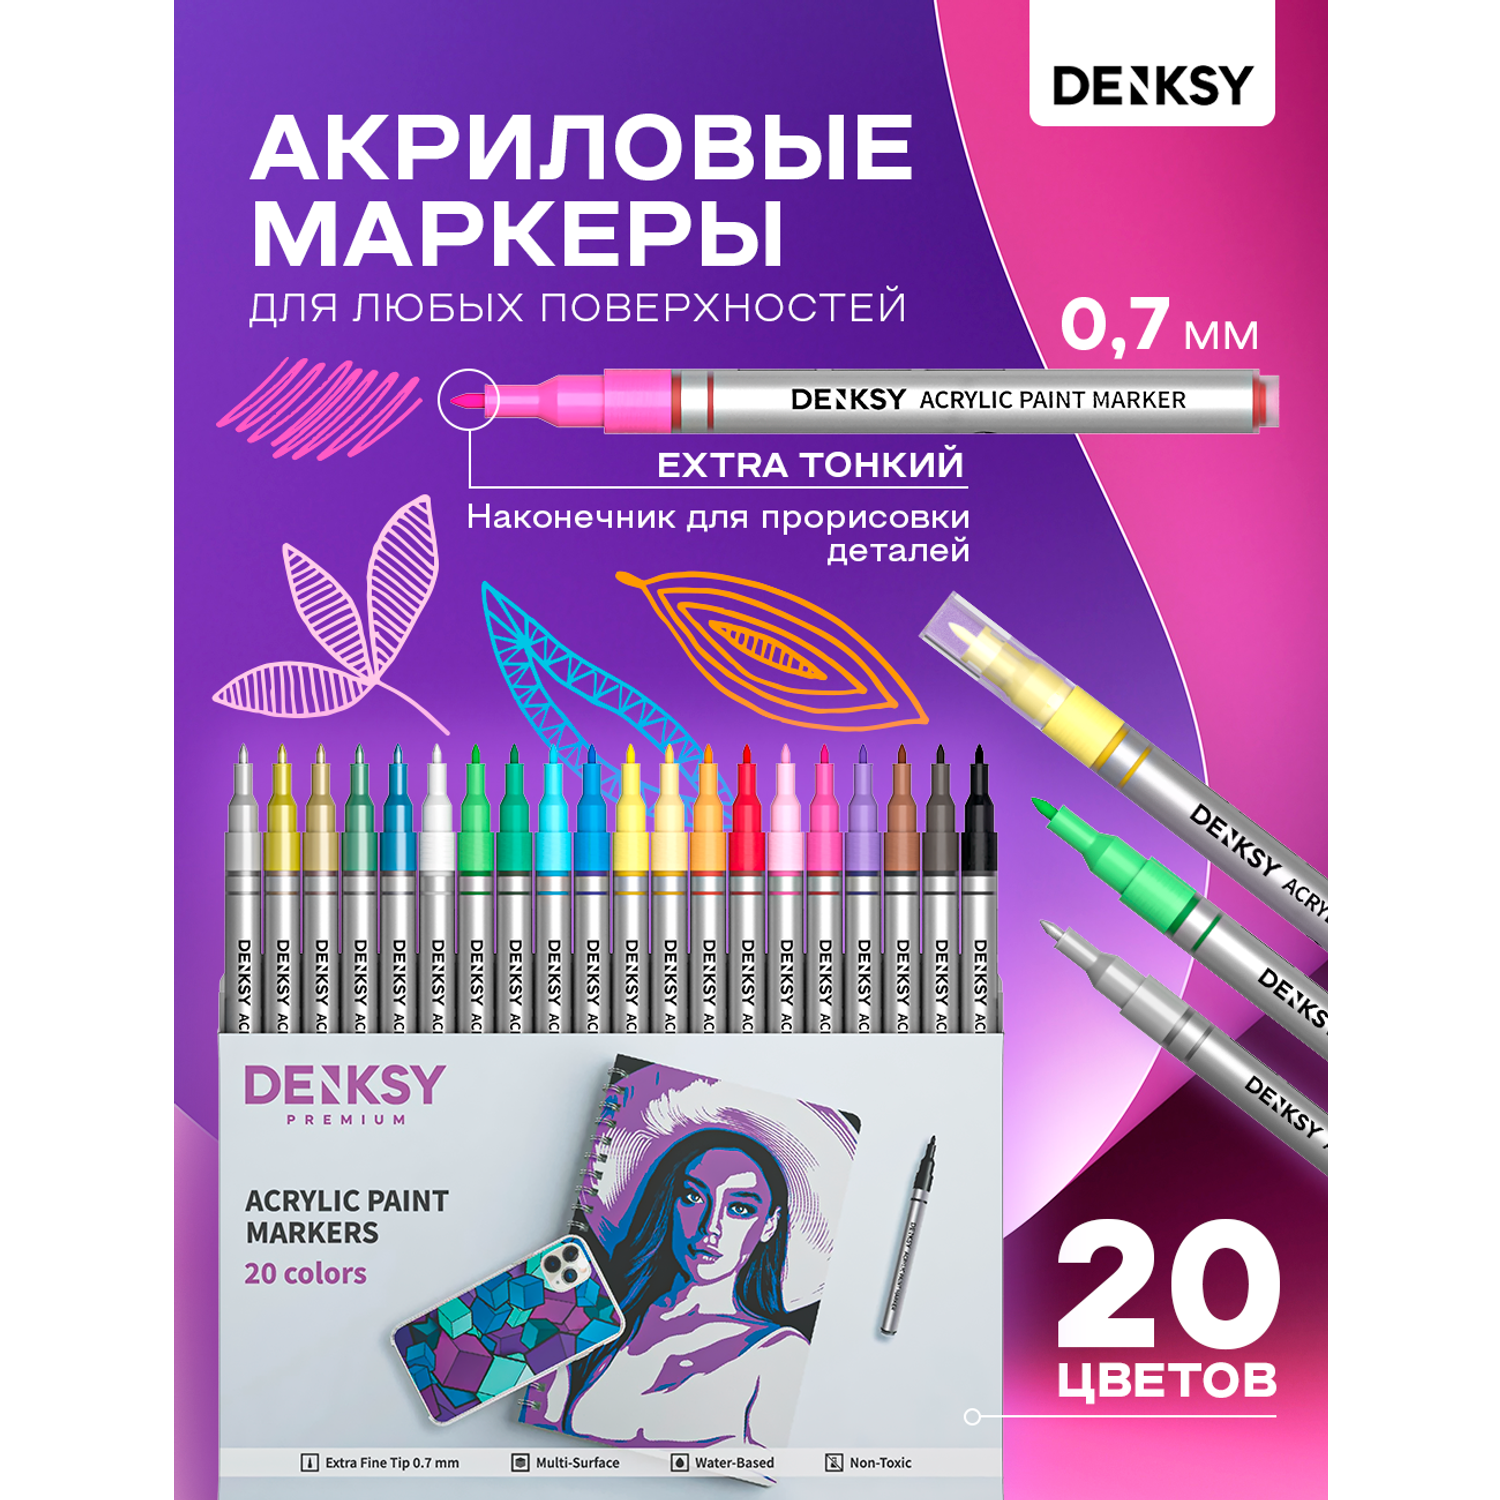 Акриловые маркеры DENKSY 20 цветов с наконечниками 0.7 мм - фото 1